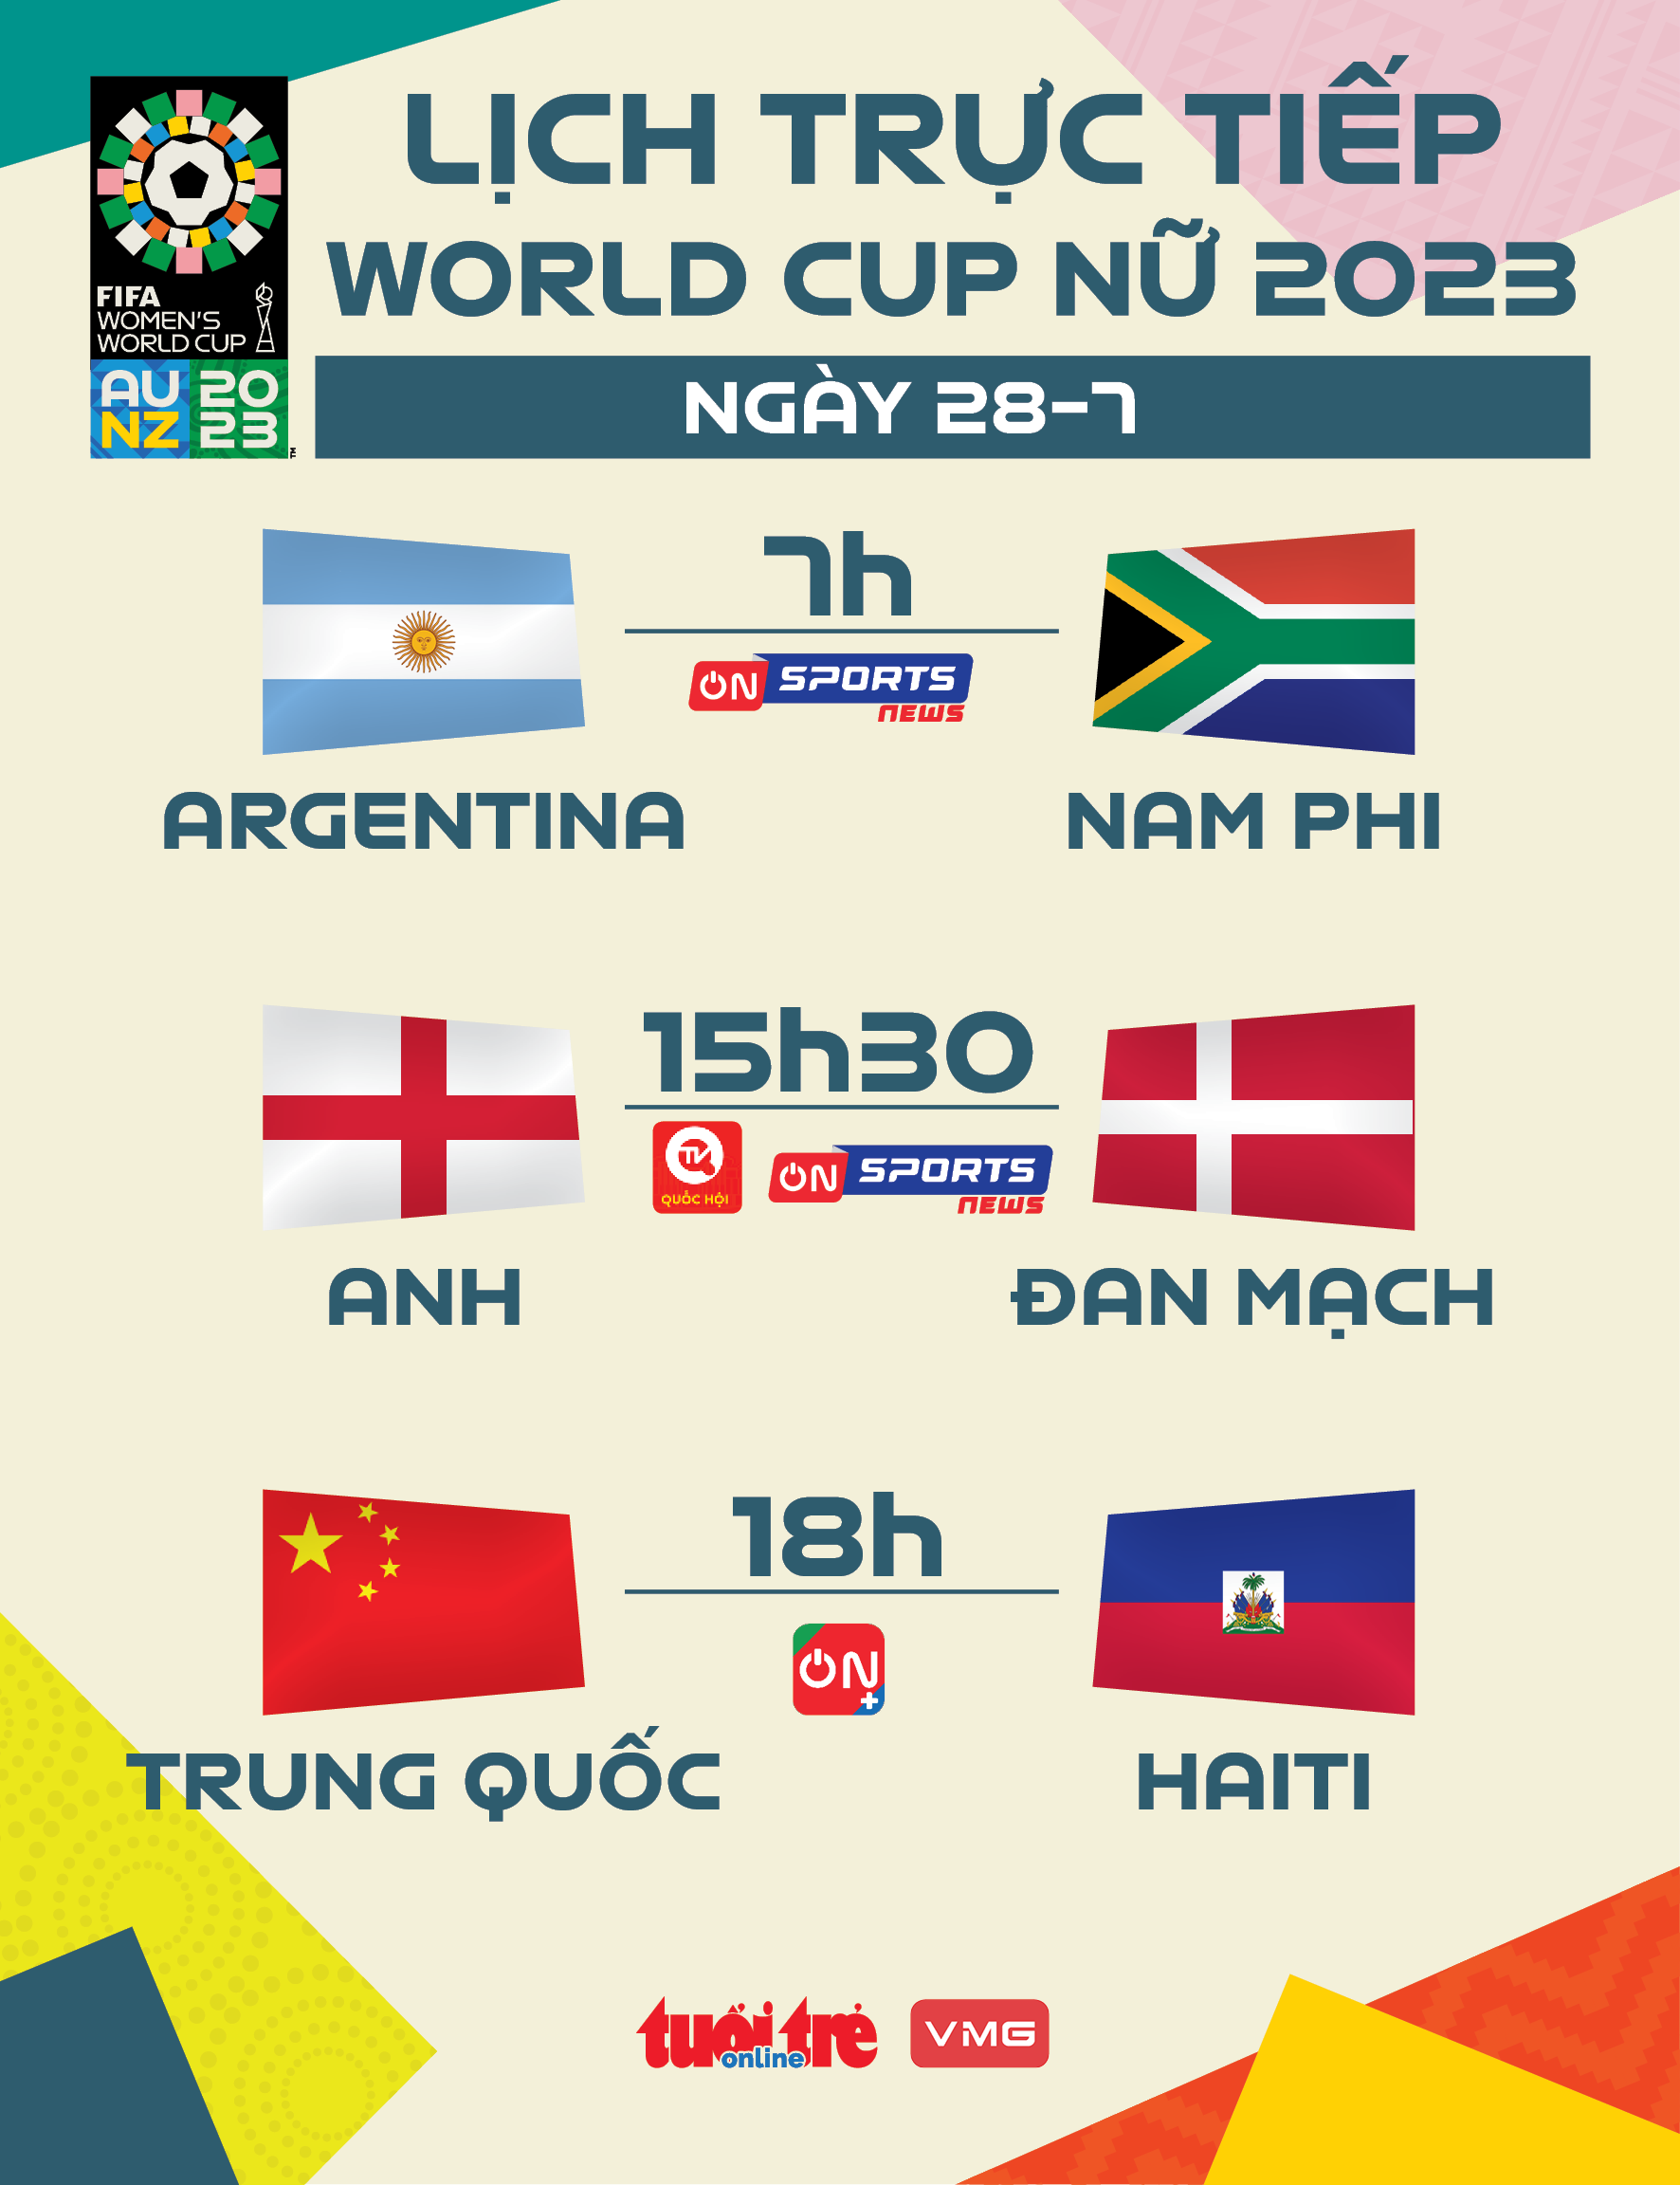 Lịch trực tiếp World Cup nữ 2023 ngày 28-7: Anh gặp Đan Mạch - Ảnh 1.